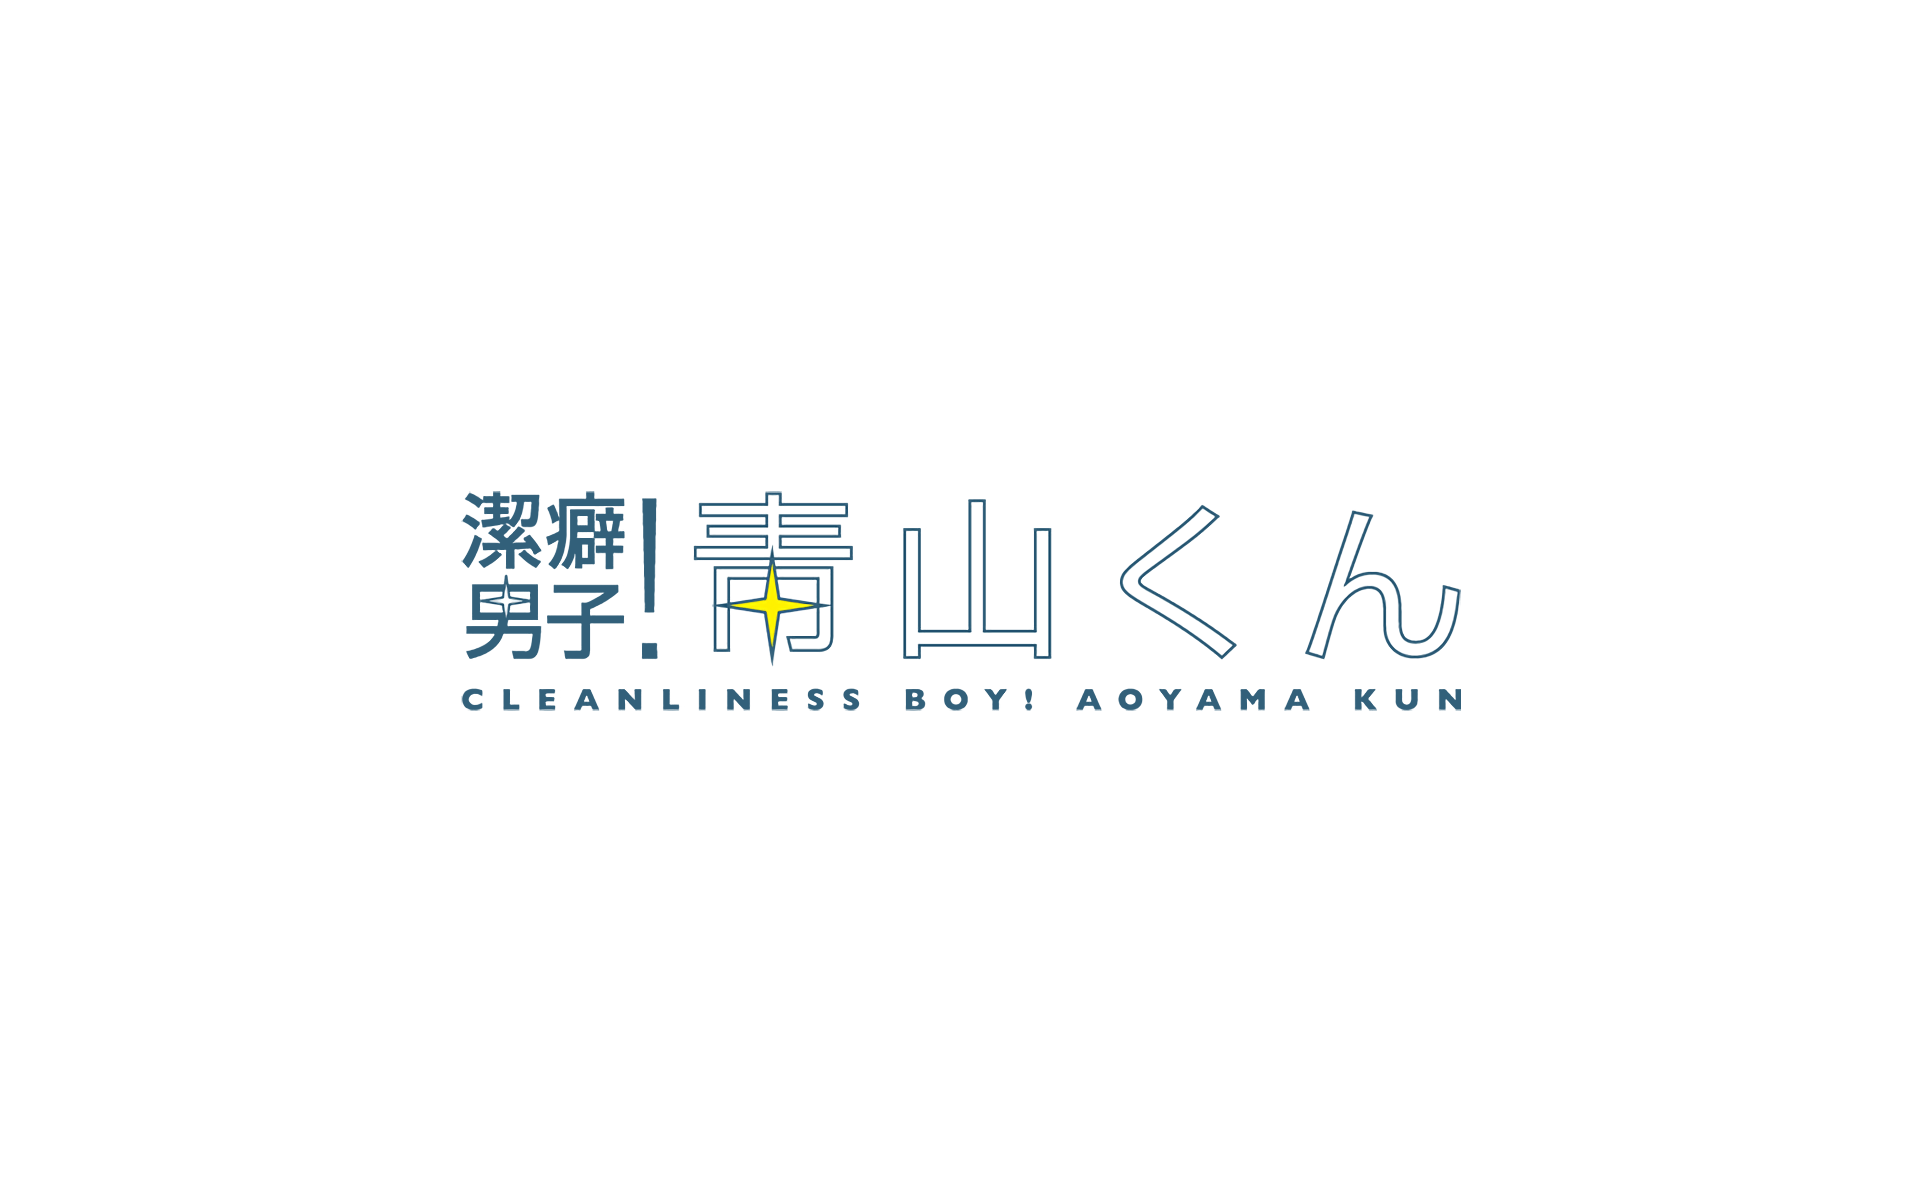 Aoyama-kun, Keppeki Danshi! Aoyama-kun ; Clean Freak! Aoyama-kun:  Cleanliness Boy! Aoyama-kun